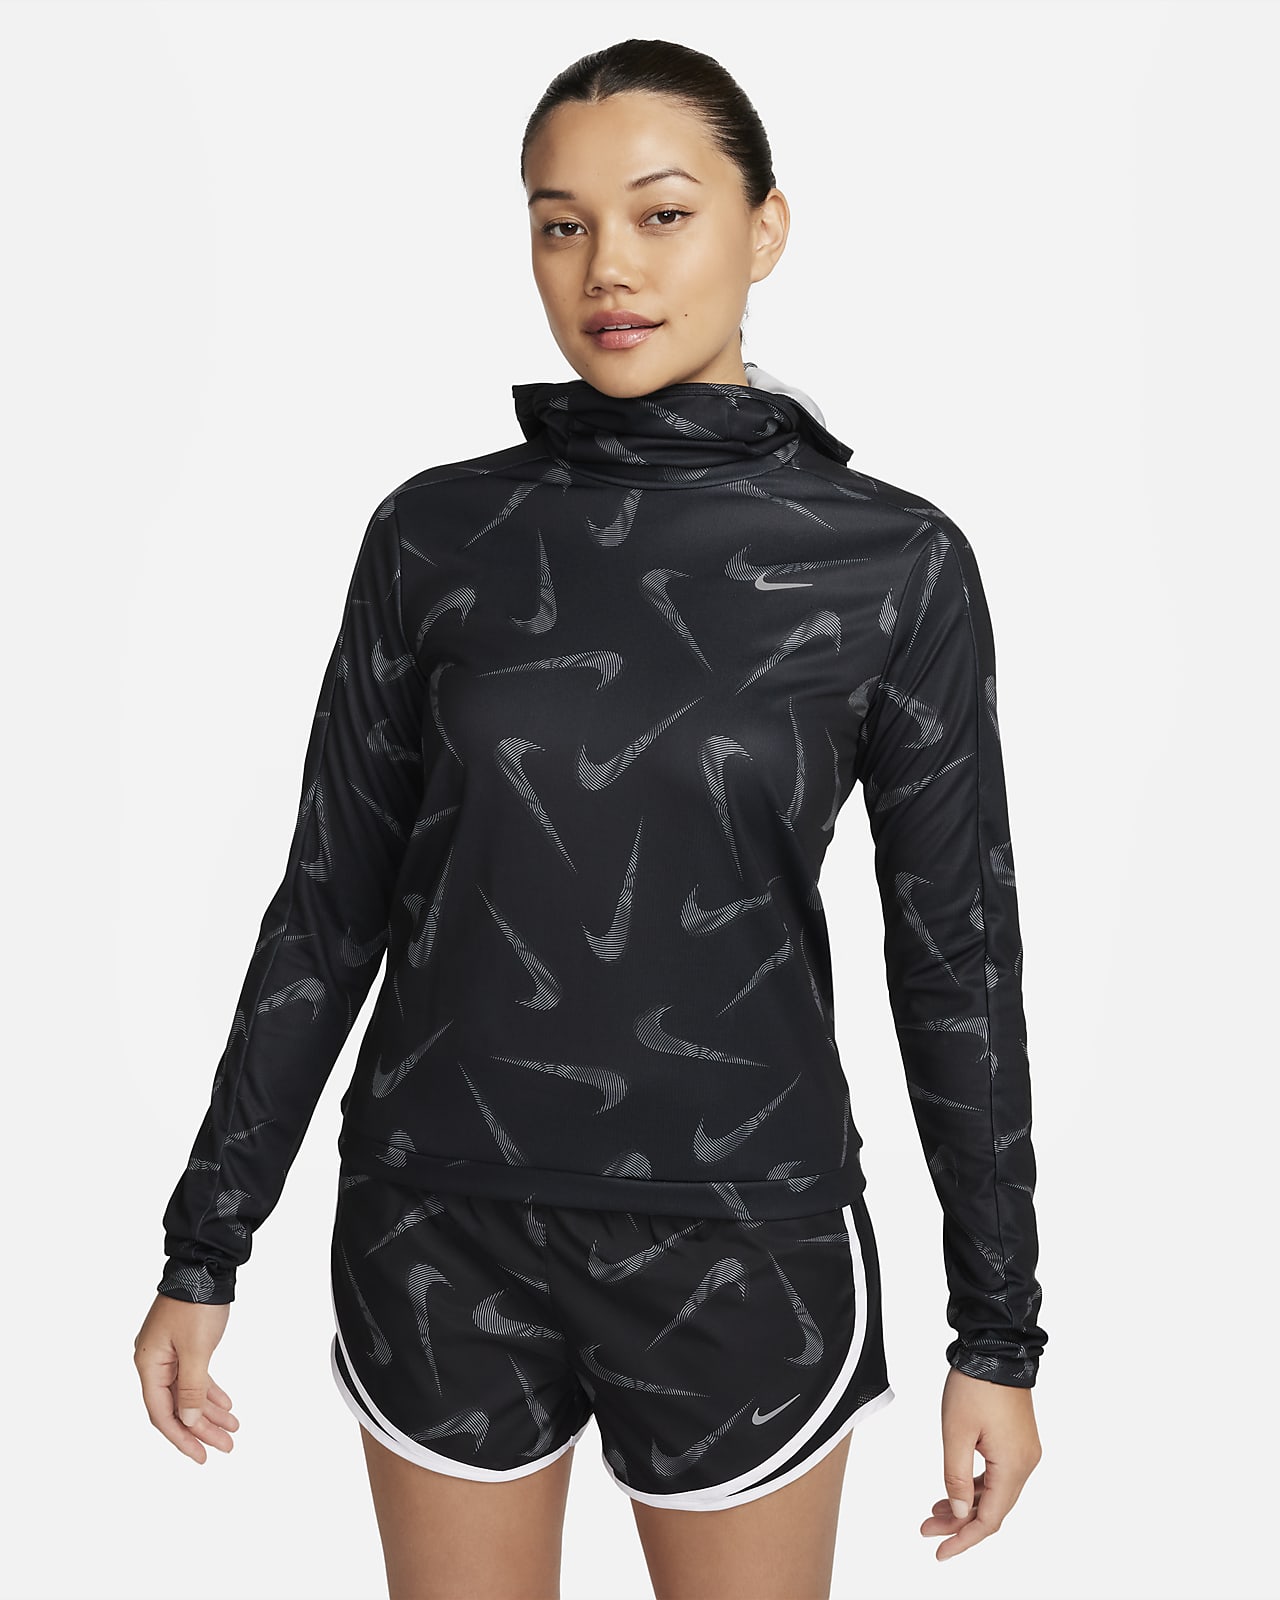 Dámská běžecká bunda Nike Swoosh s kapucí a potiskem